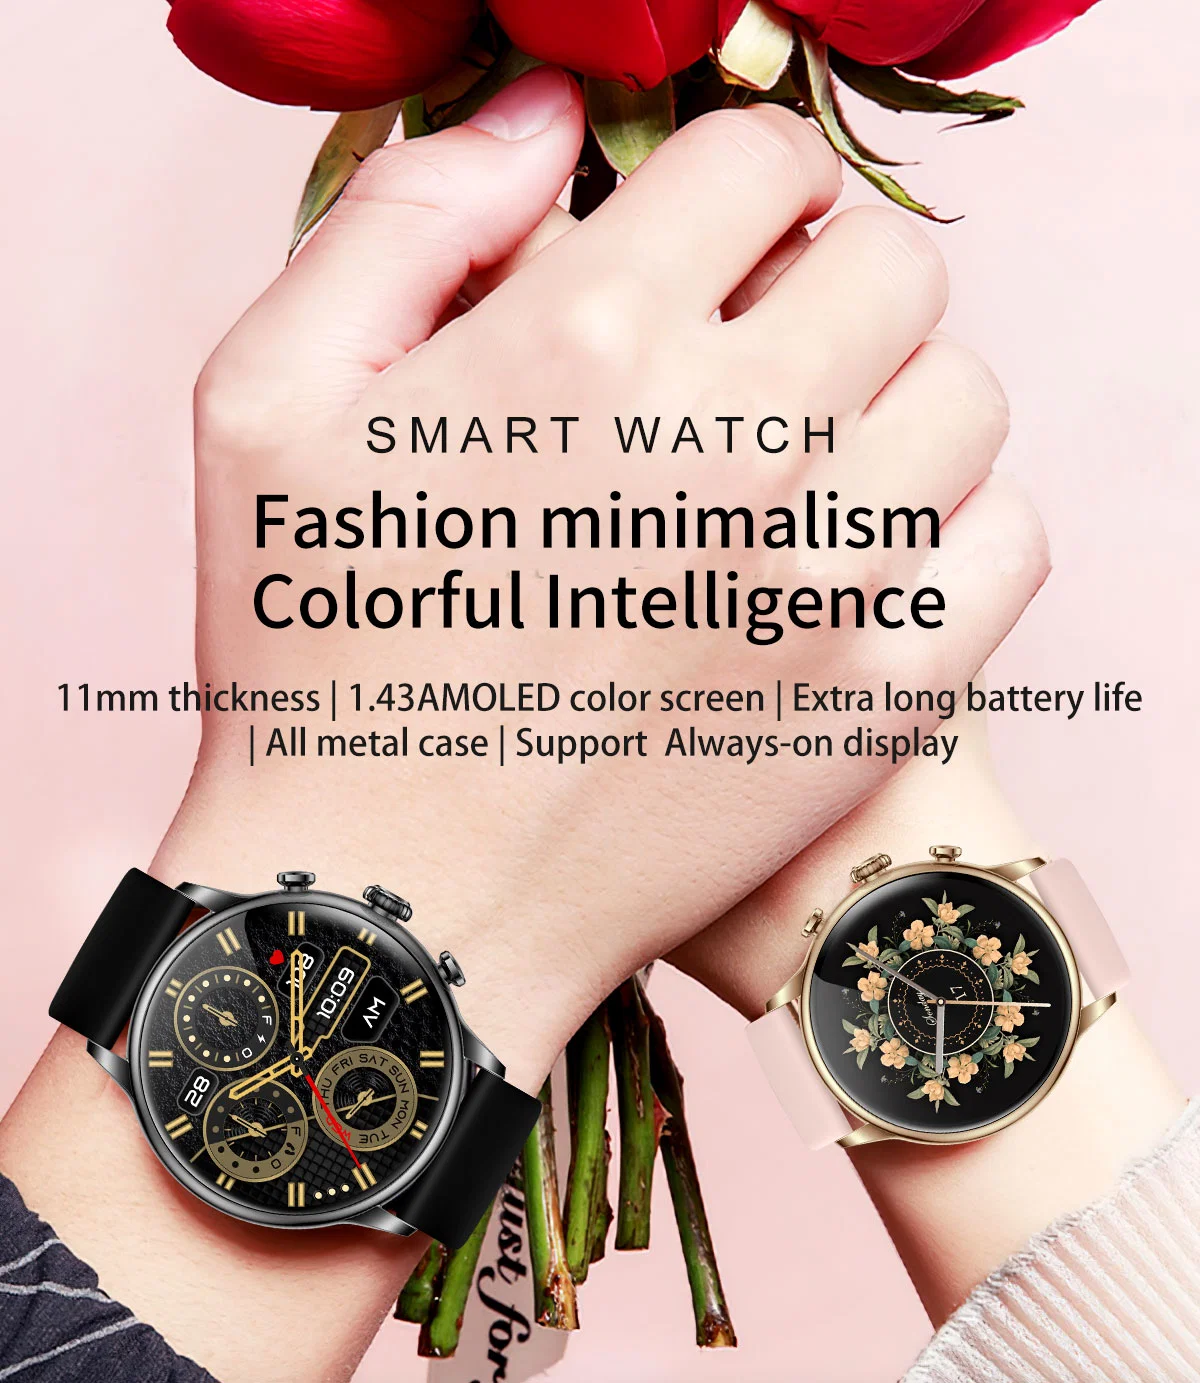 Atacado novo AMOLED Screen Fashion Gift Call Reloj inteligente Smart Sport pulso Watch Factory Custom impermeáveis preço CE para homem Lady Android iOS telemóvel